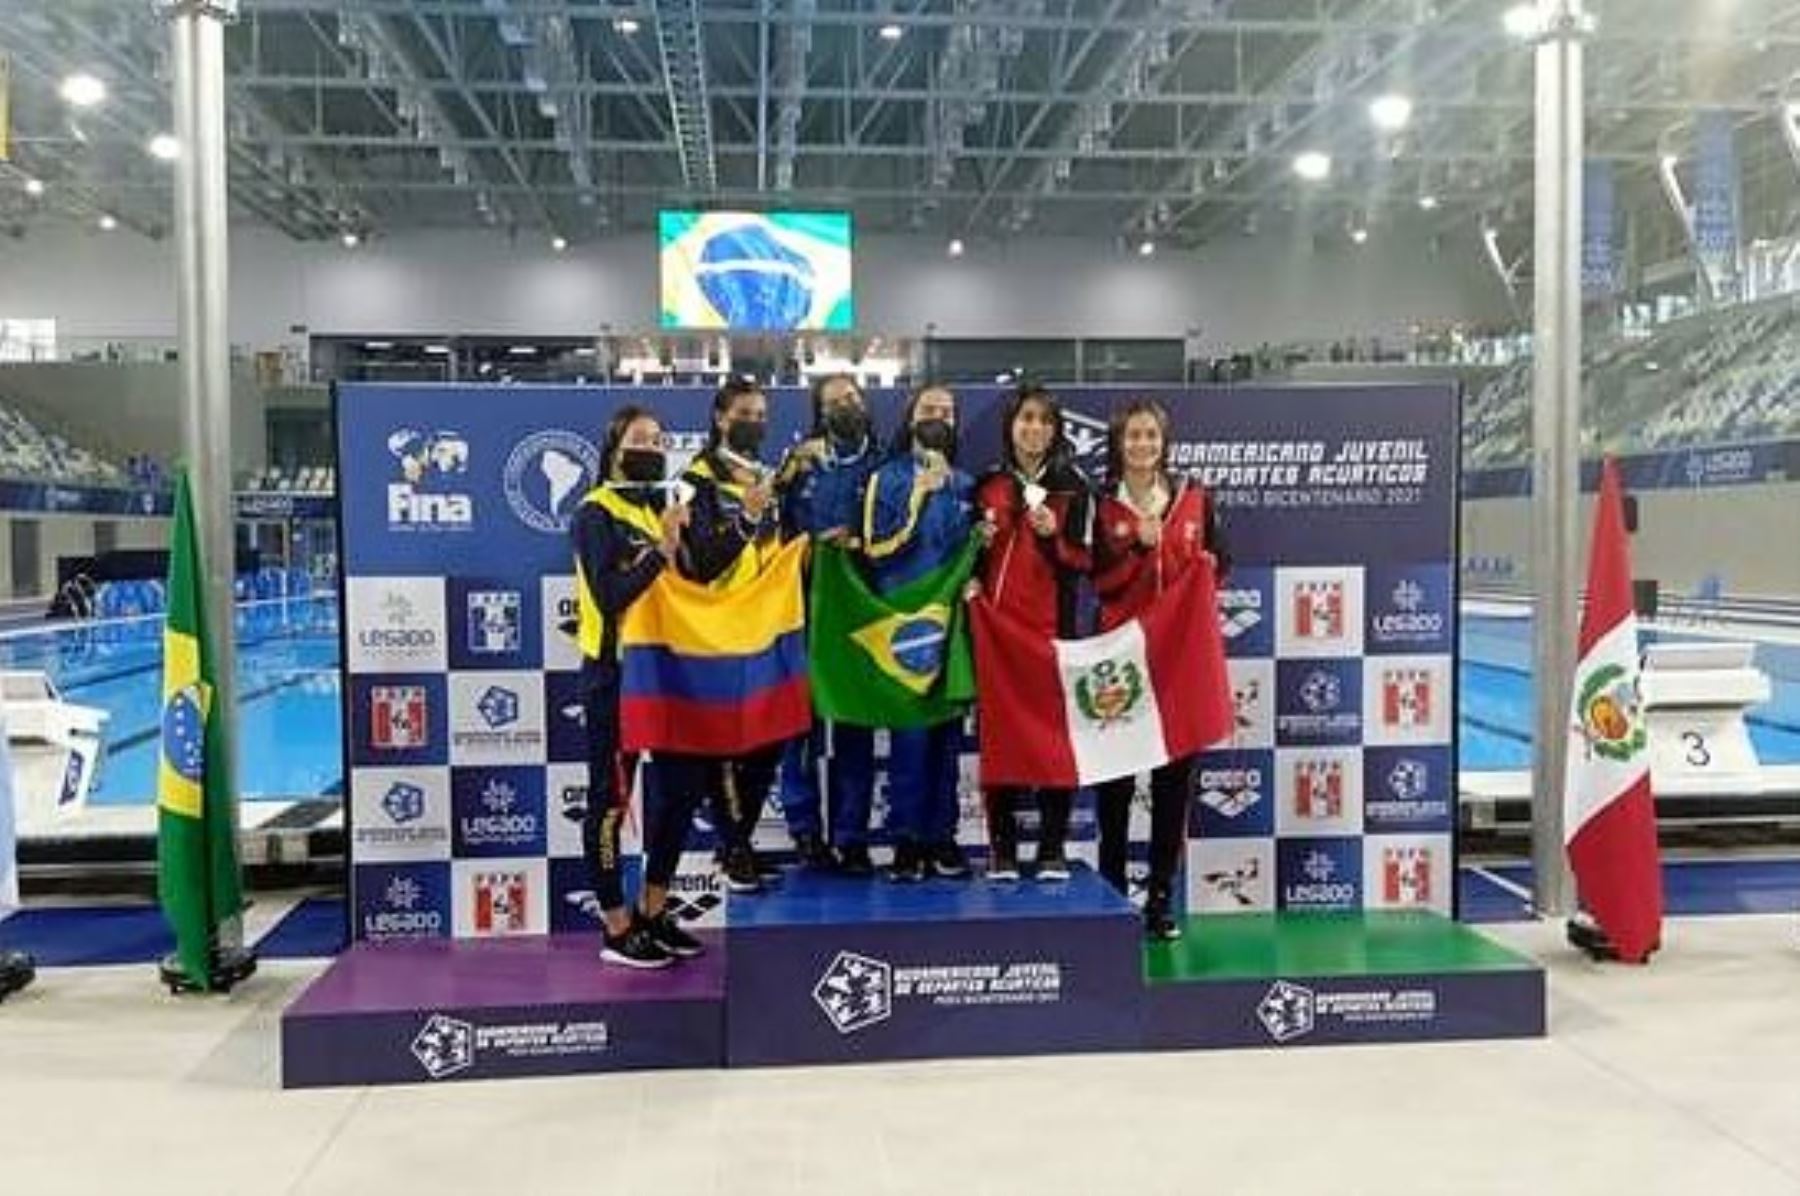 Ganadoras de la disciplina de clavados en la jornada de apertura del Campeonato Sudamericano Juvenil de Deportes Acuáticos que se desarrolla en Lima.